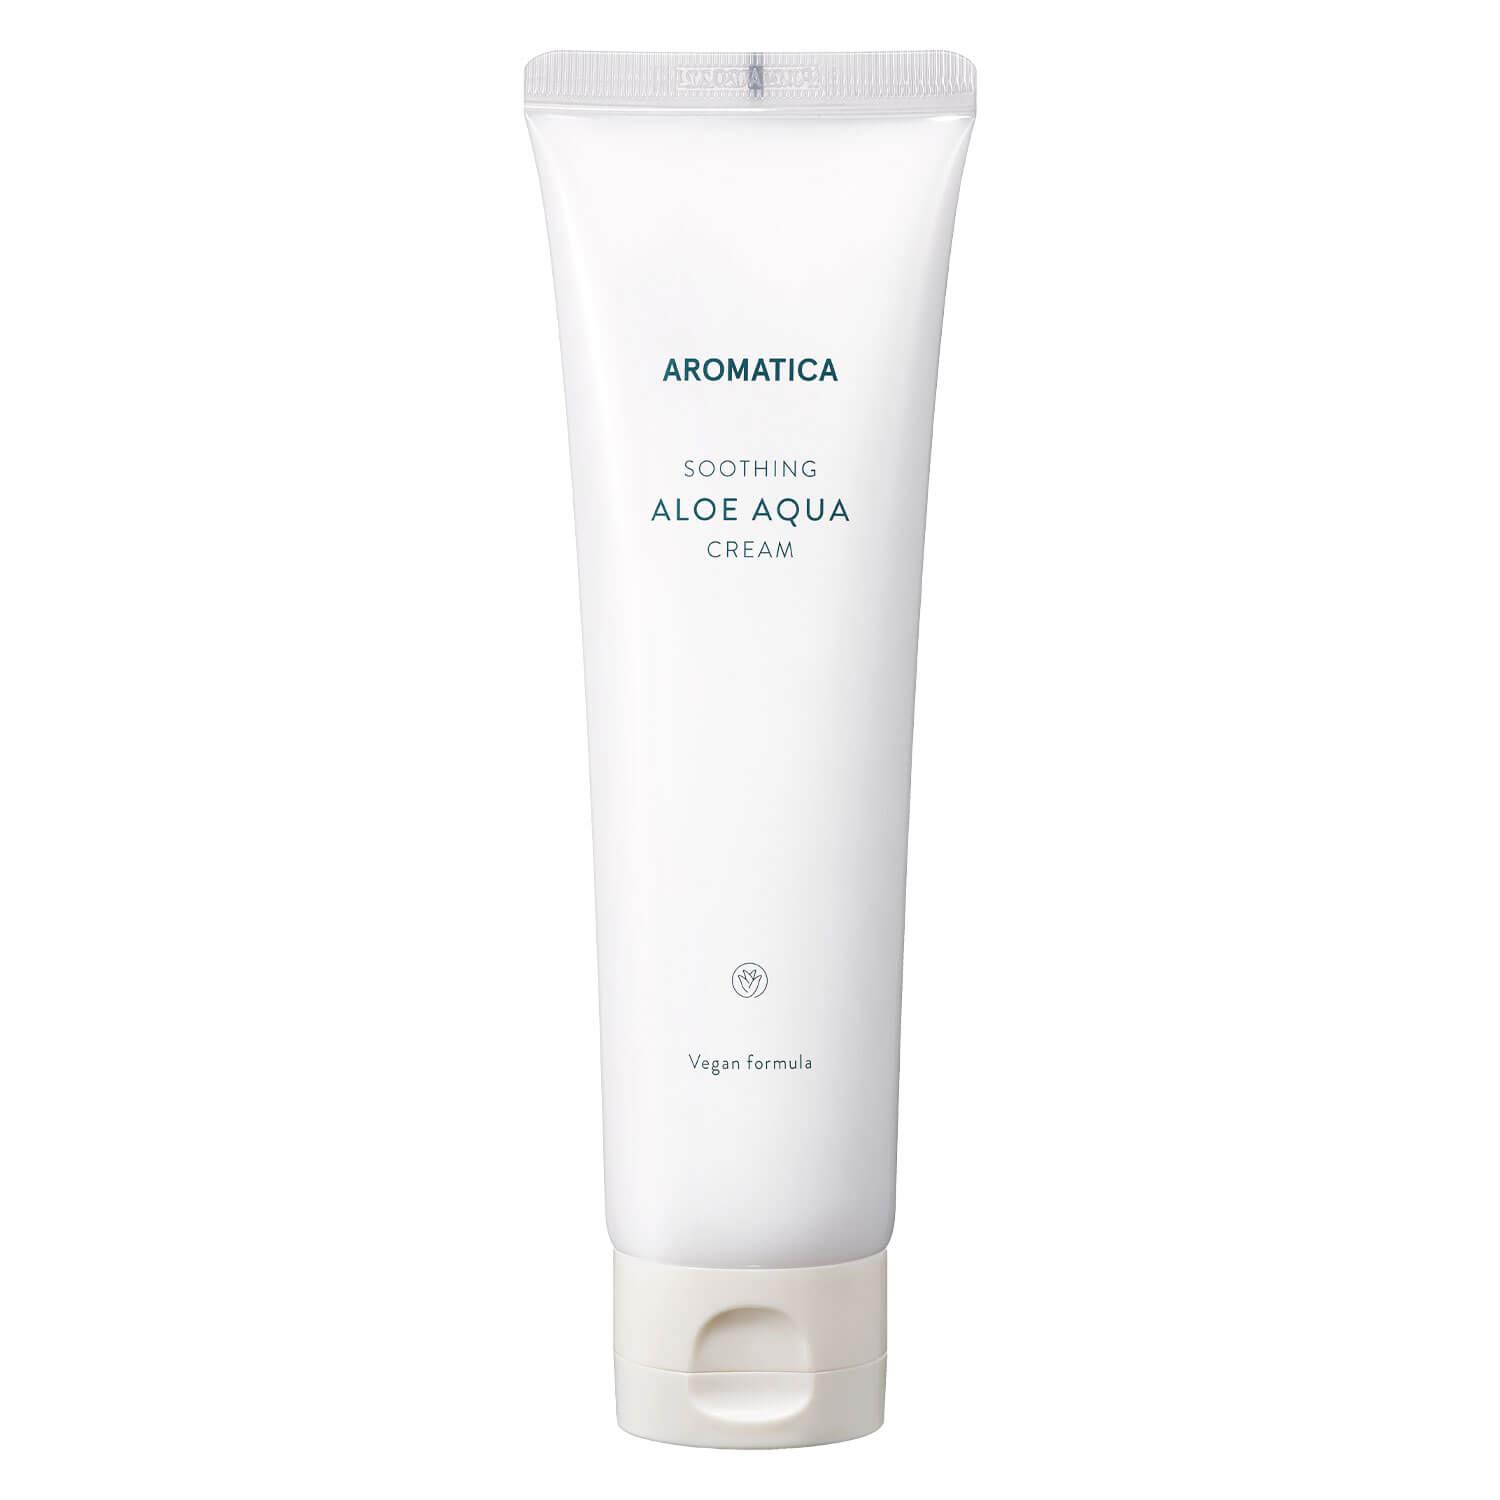 AROMATICA - Soothing Aloe Aqua Cream